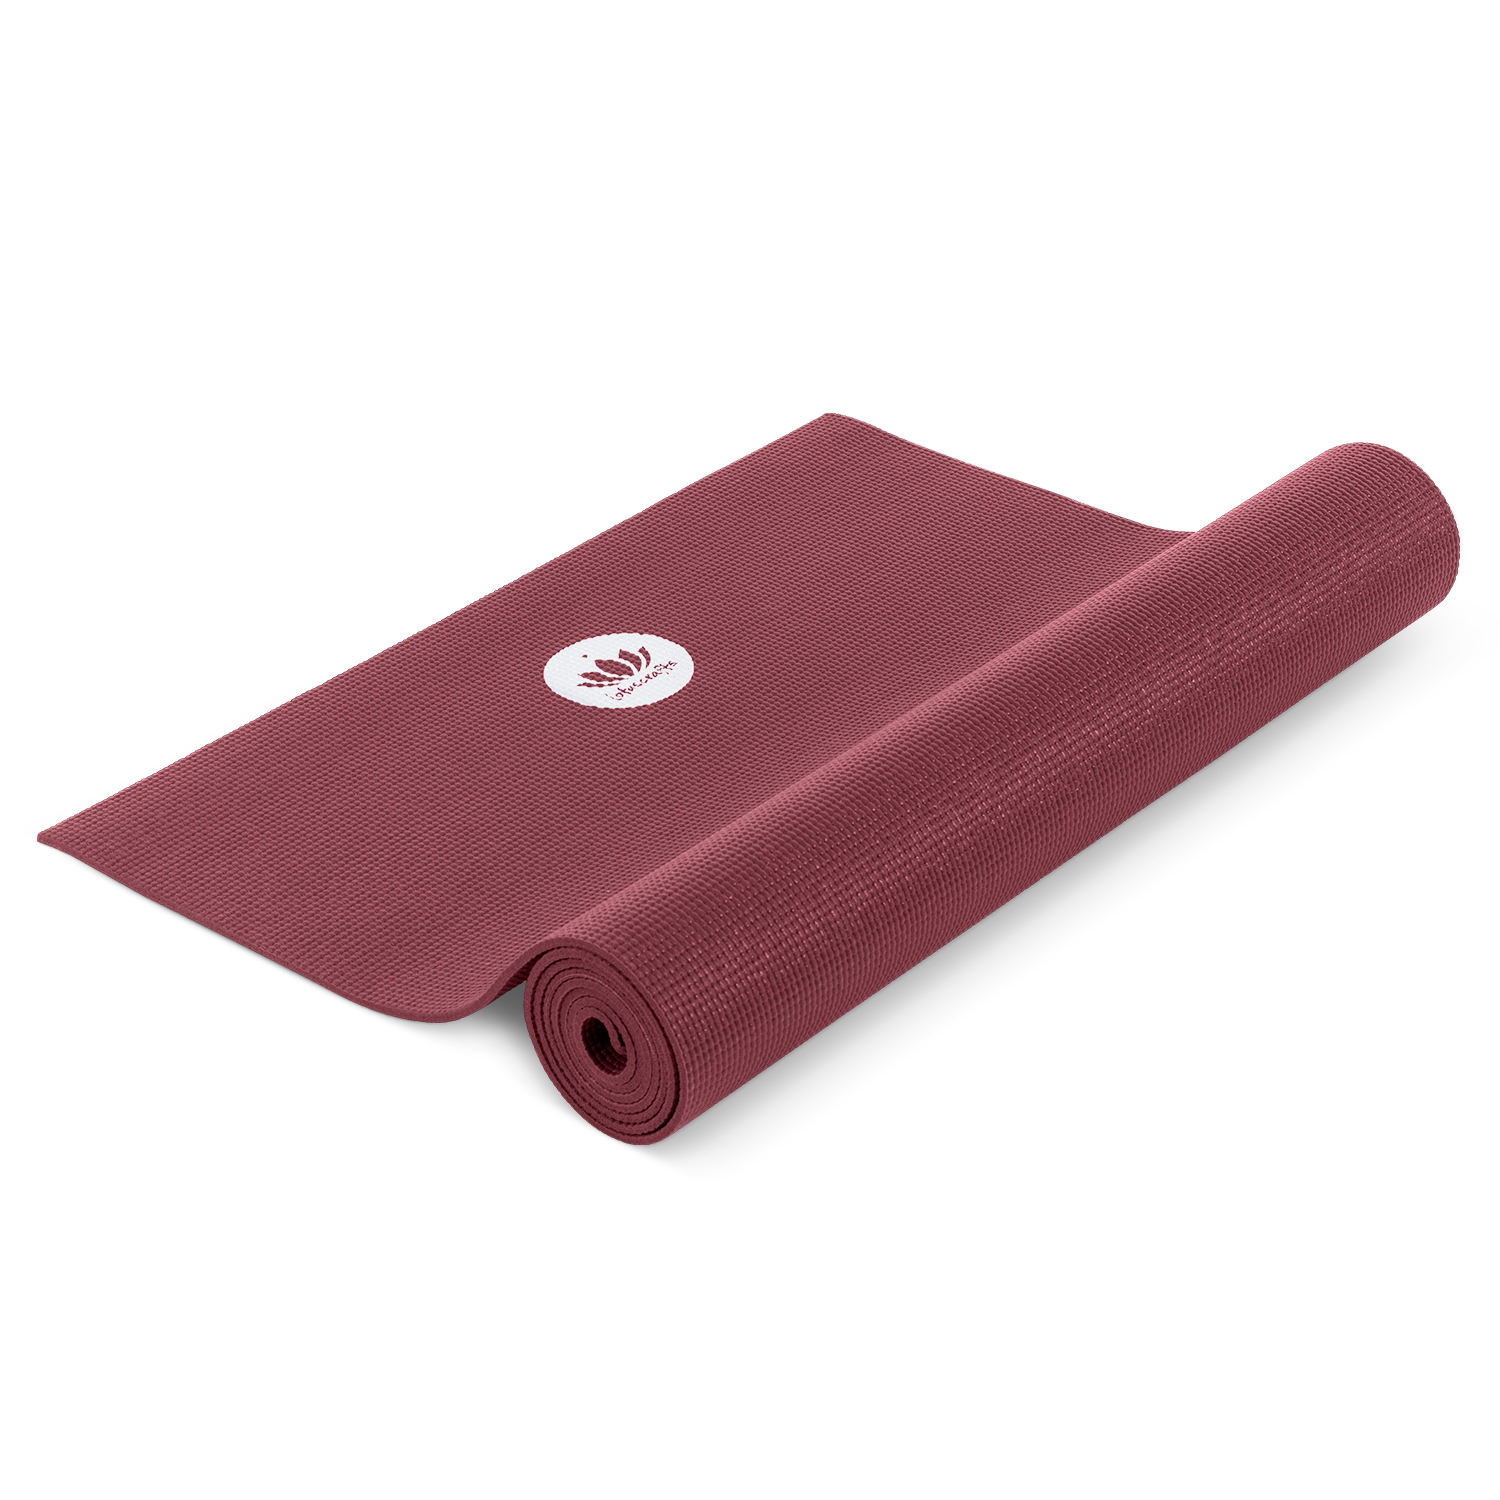 Yogaudstyr Startpakke stor med XL yogamåtte - Bordeaux